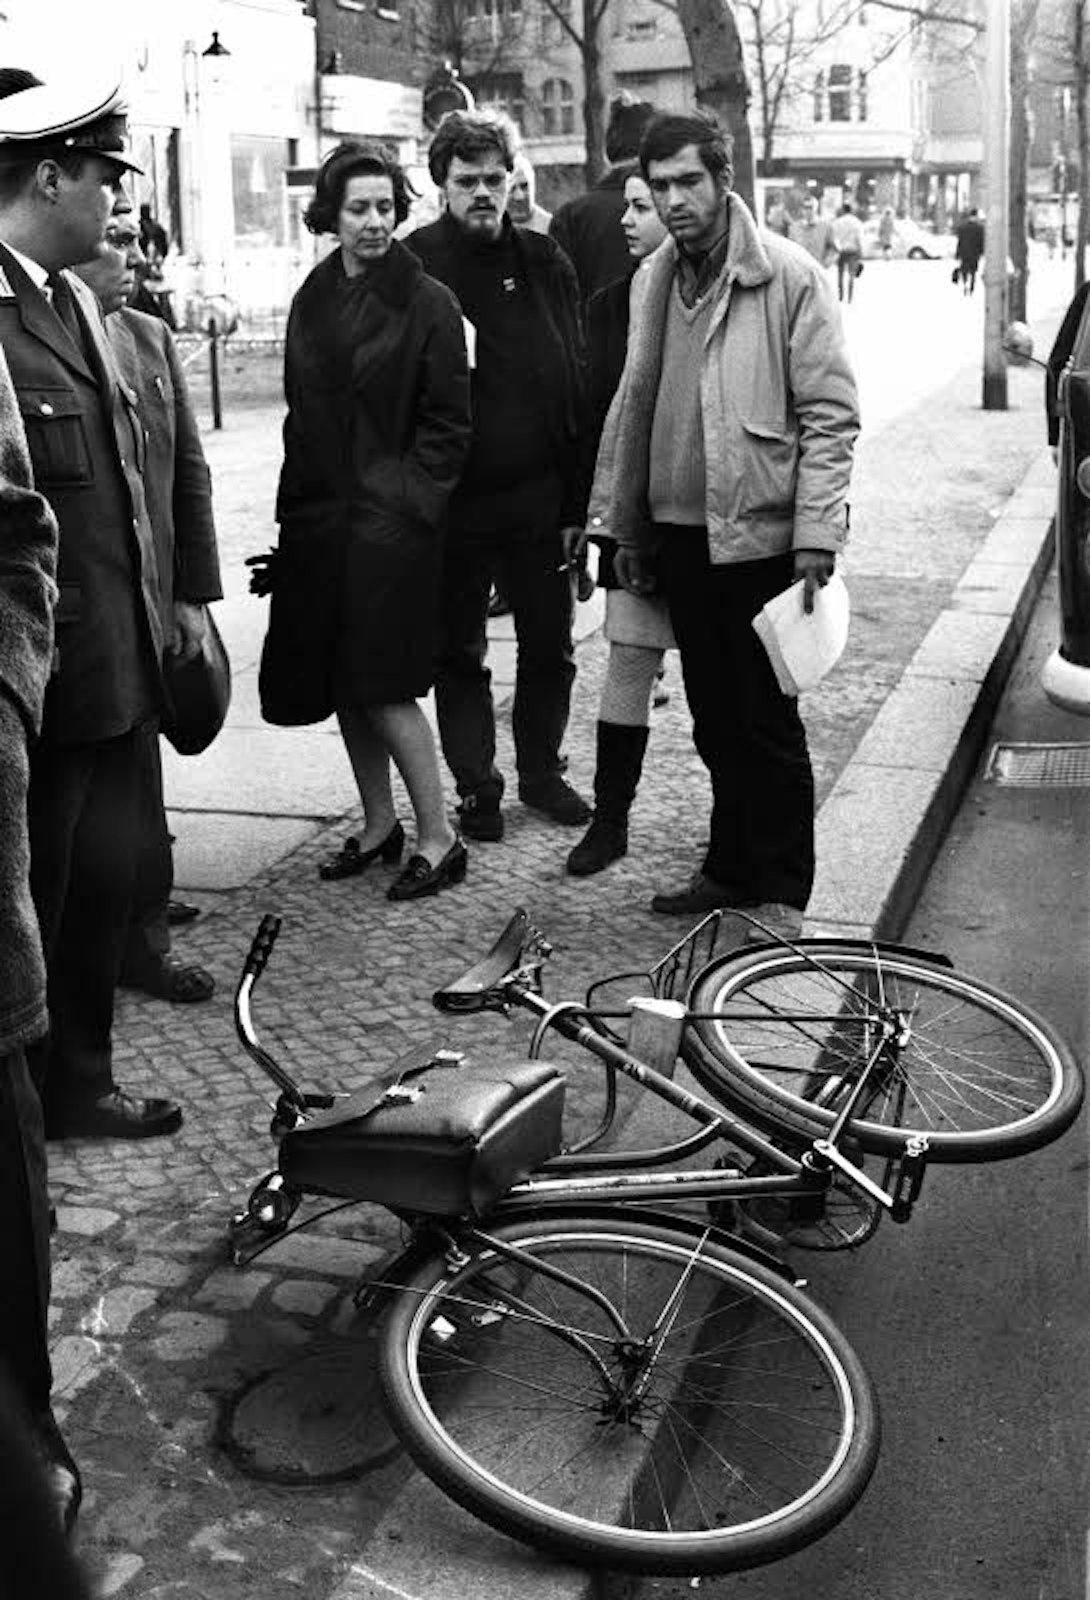 Das Fahrrad von Rudi Dutschke am Tatort am Kurfürstendamm in Berlin, wo er am 11. April 1968 niedergeschossen wurde.